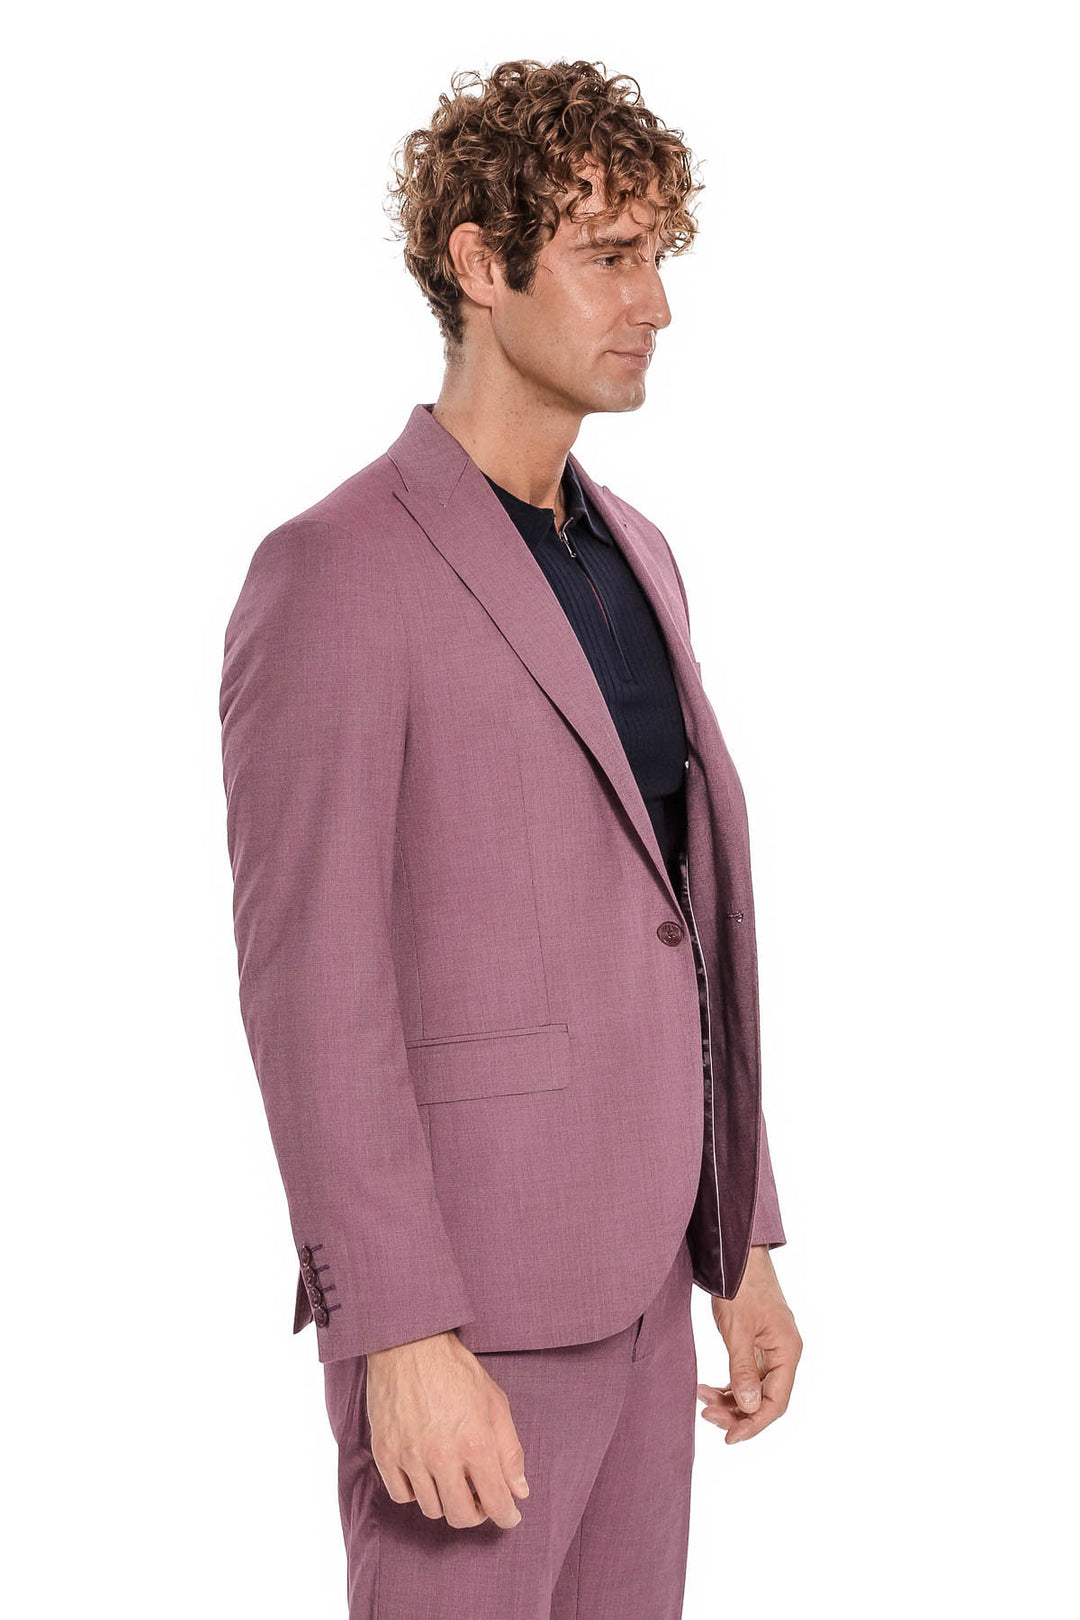 2 Piece Patterned Slim Fit Purple Men Suit - Wessi